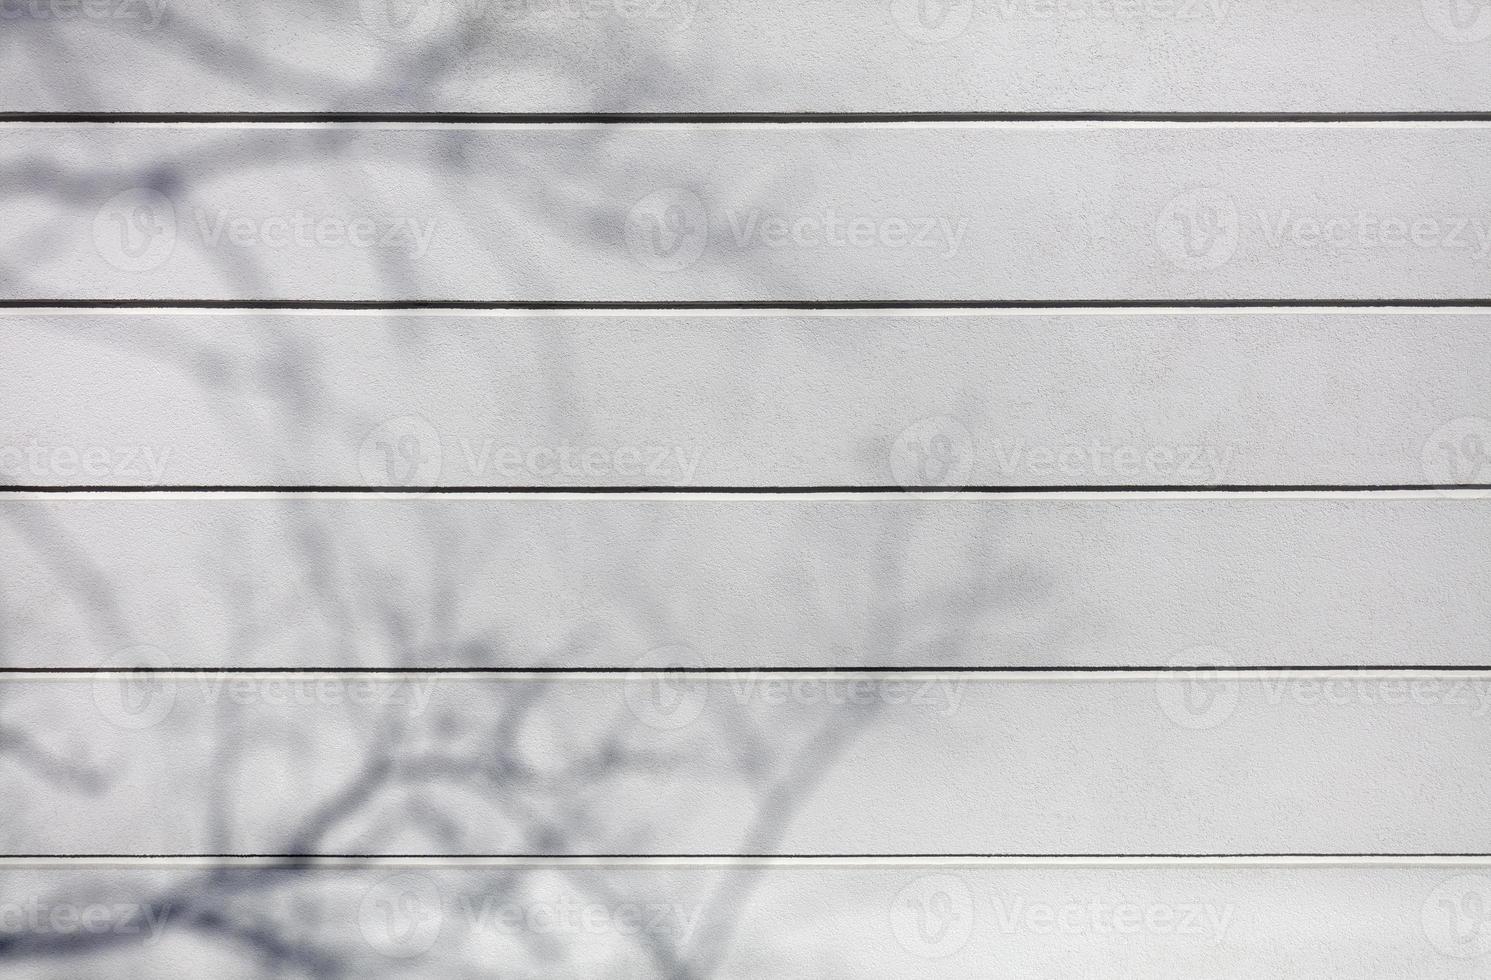 plâtre blanc de texture de mur en béton avec des rainures de division horizontales sur le mur. photo